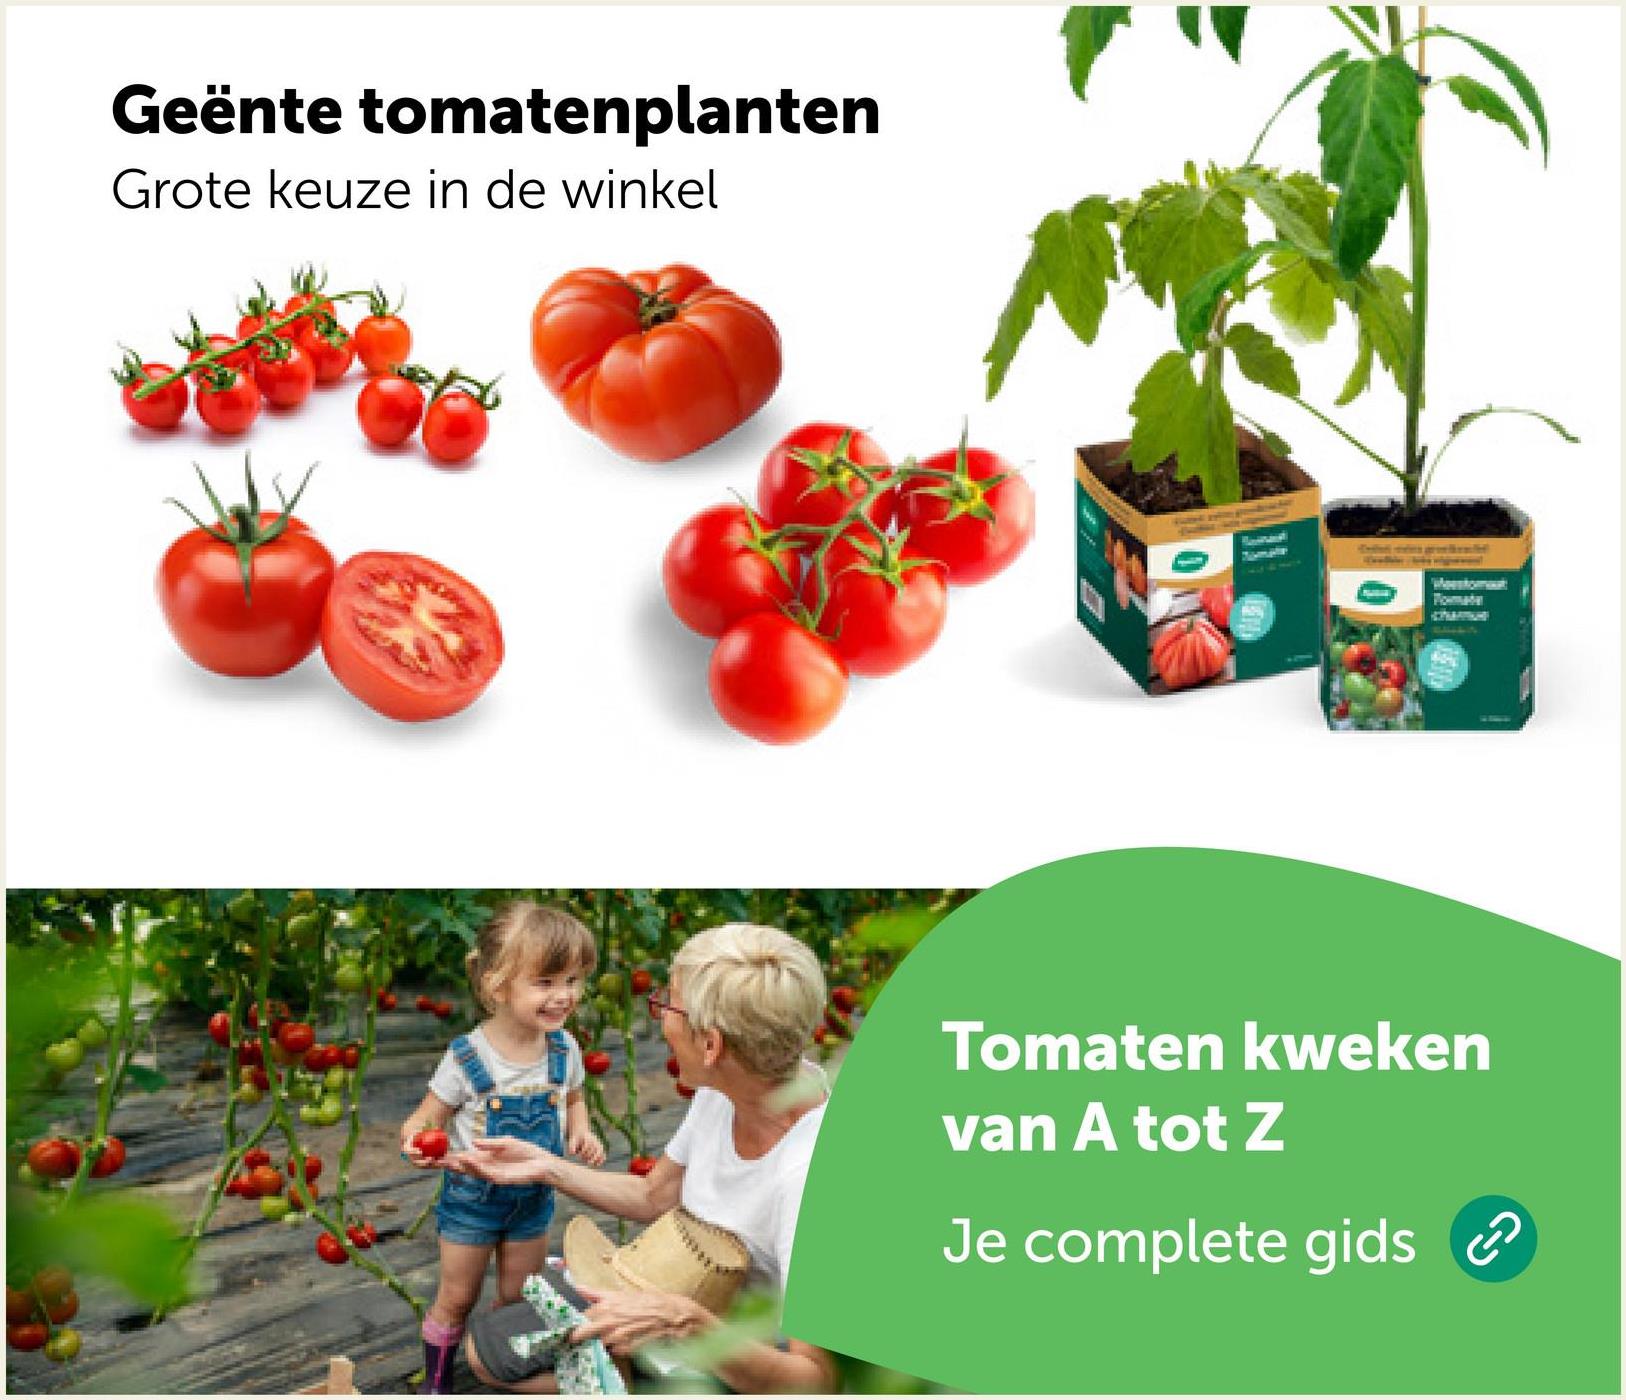 Geënte tomatenplanten
Grote keuze in de winkel
0
Mestomat
Tomaten kweken
van A tot Z
Je complete gids